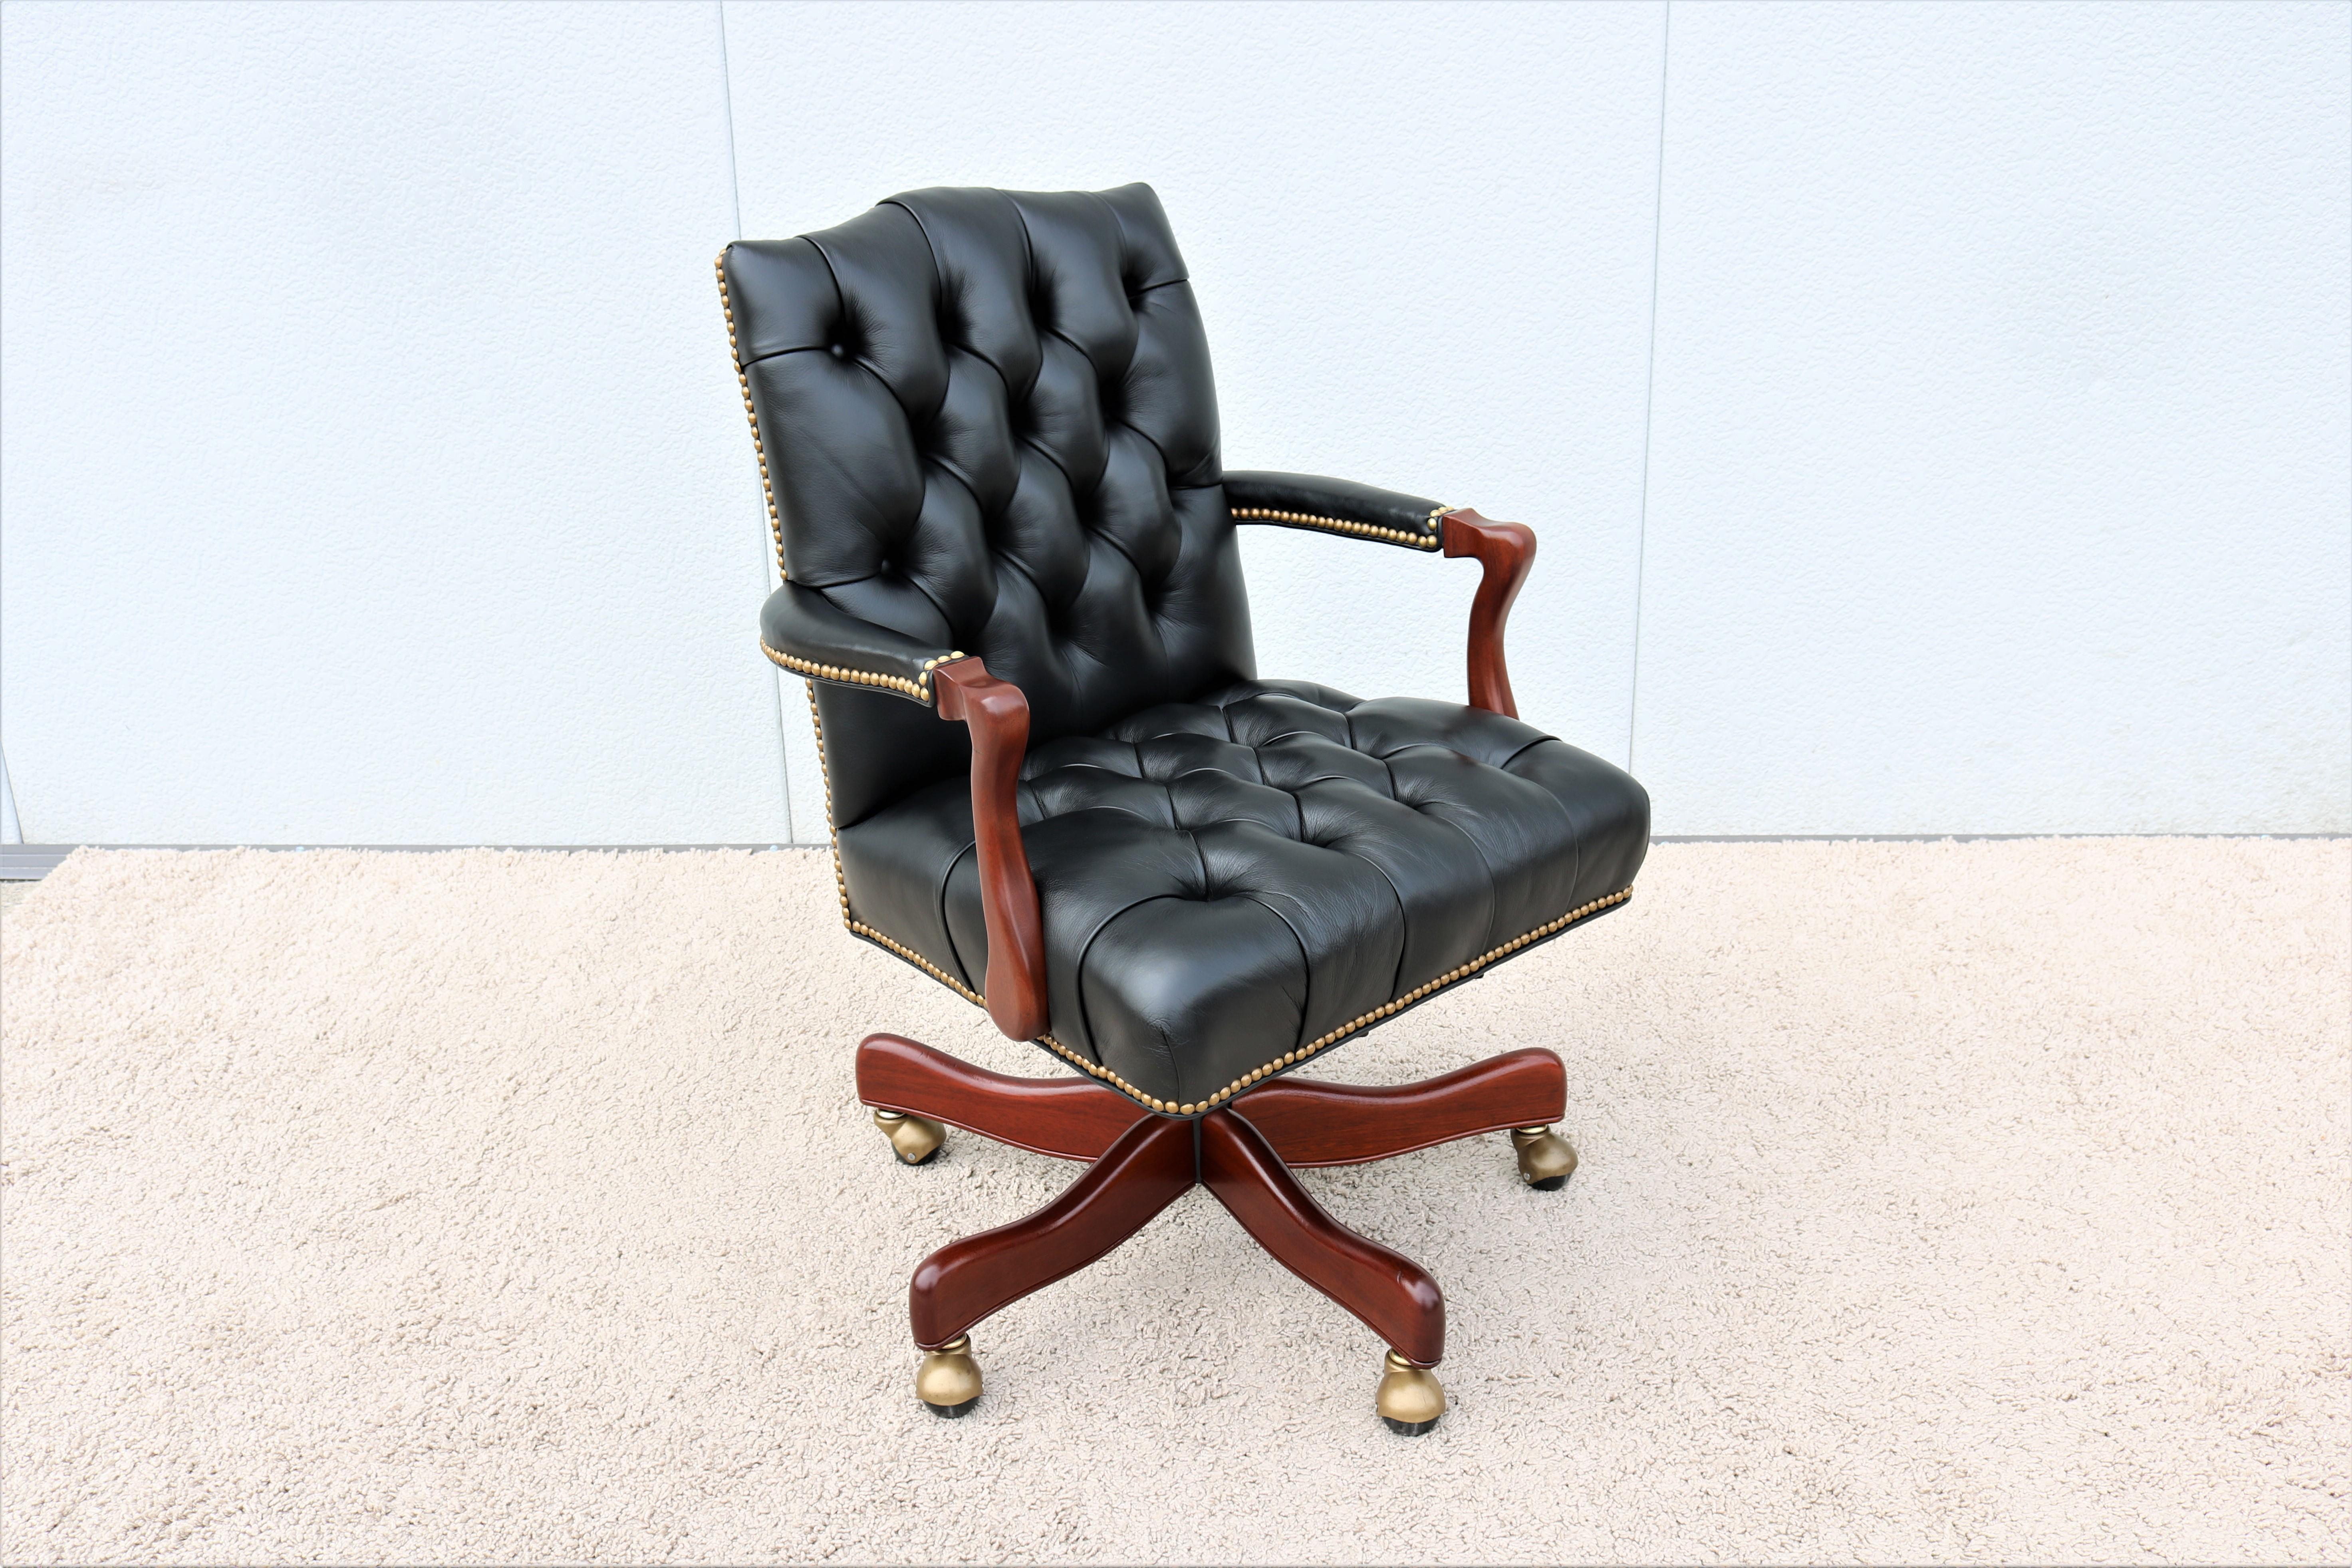 Fabuleux fauteuil de bureau de direction traditionnel Graham en cuir tufté à boutons profonds, pivotant et inclinable, par Cabot Wrenn. 
Un style classique, intemporel et luxueux inspiré du design des 18e et 19e siècles.
Magnifiquement fabriqué à la